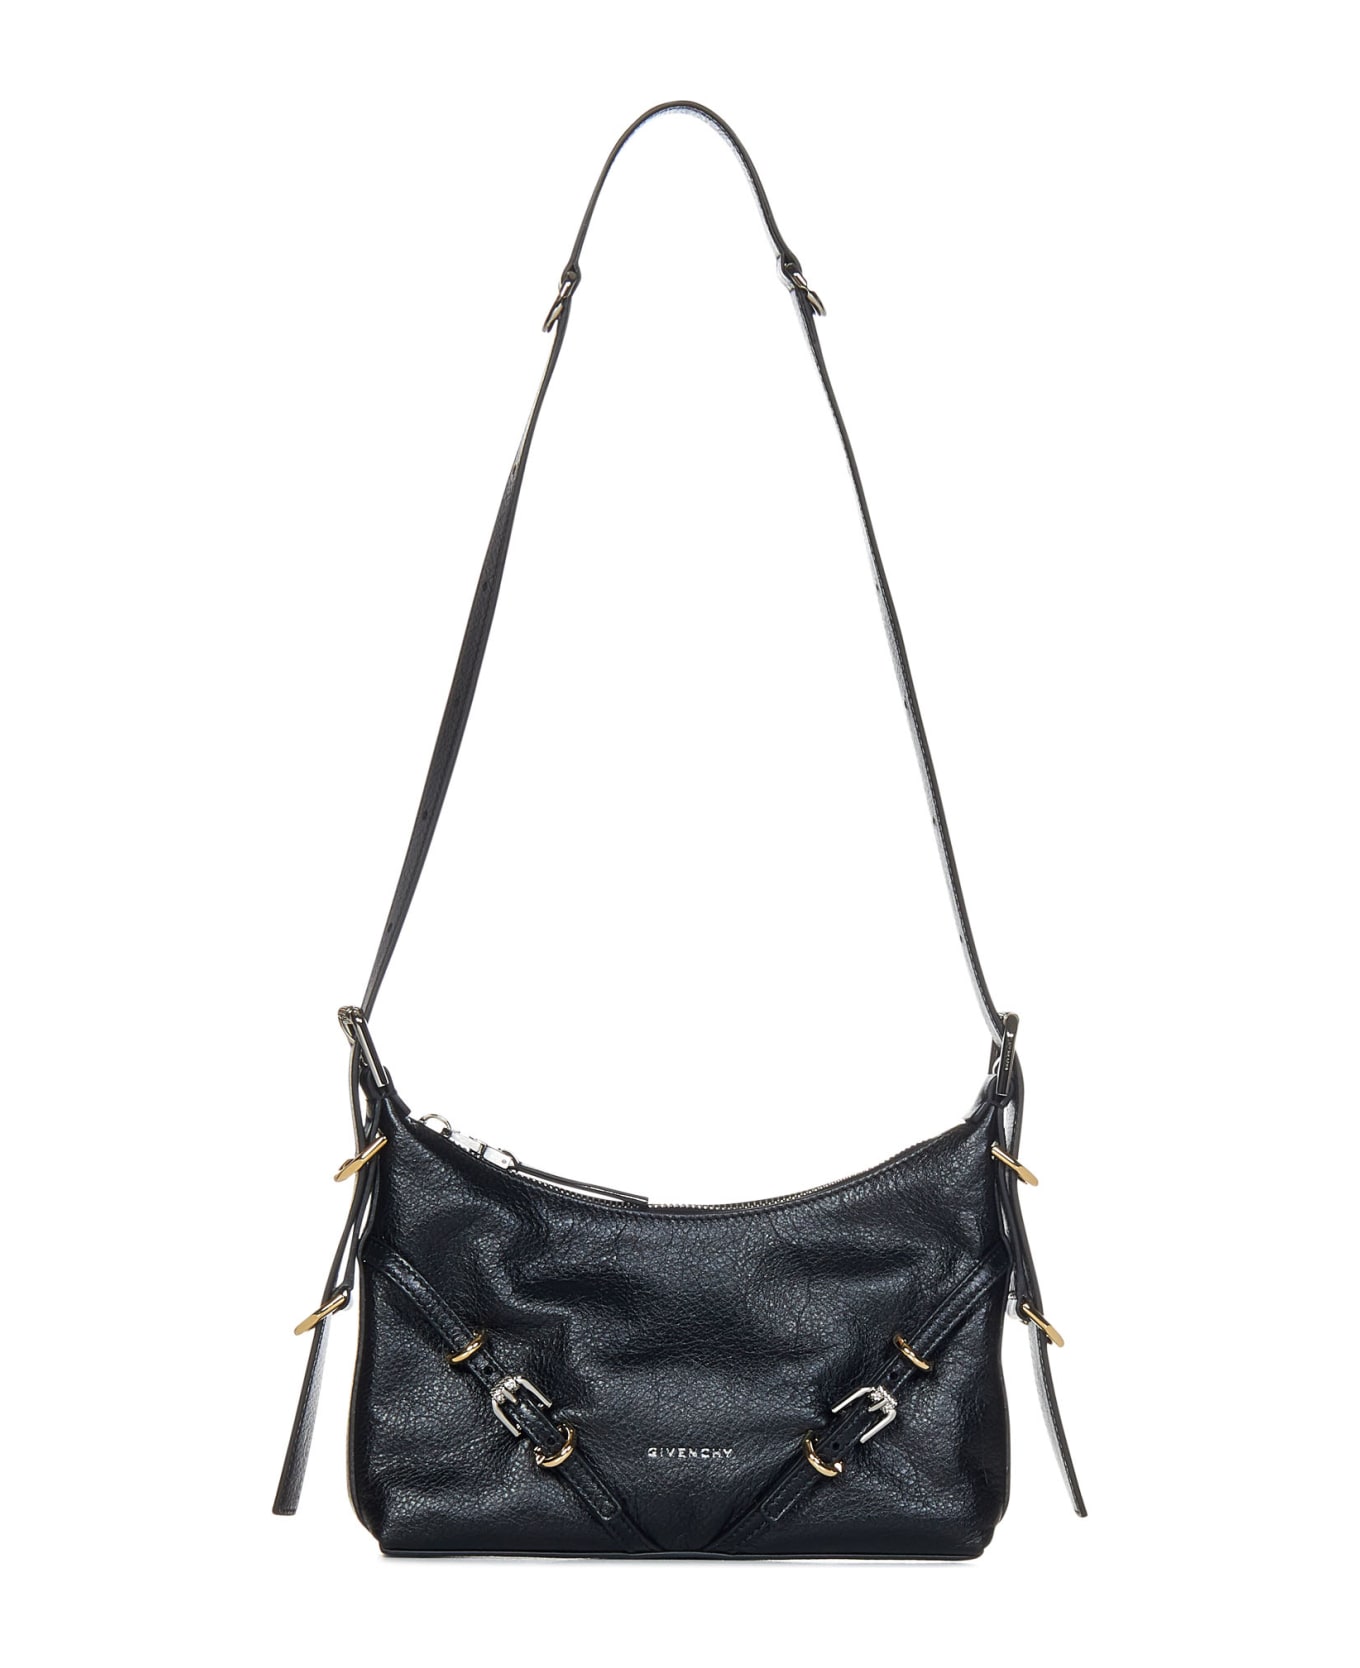 Givenchy Voyou Mini Shoulder Bag - Black